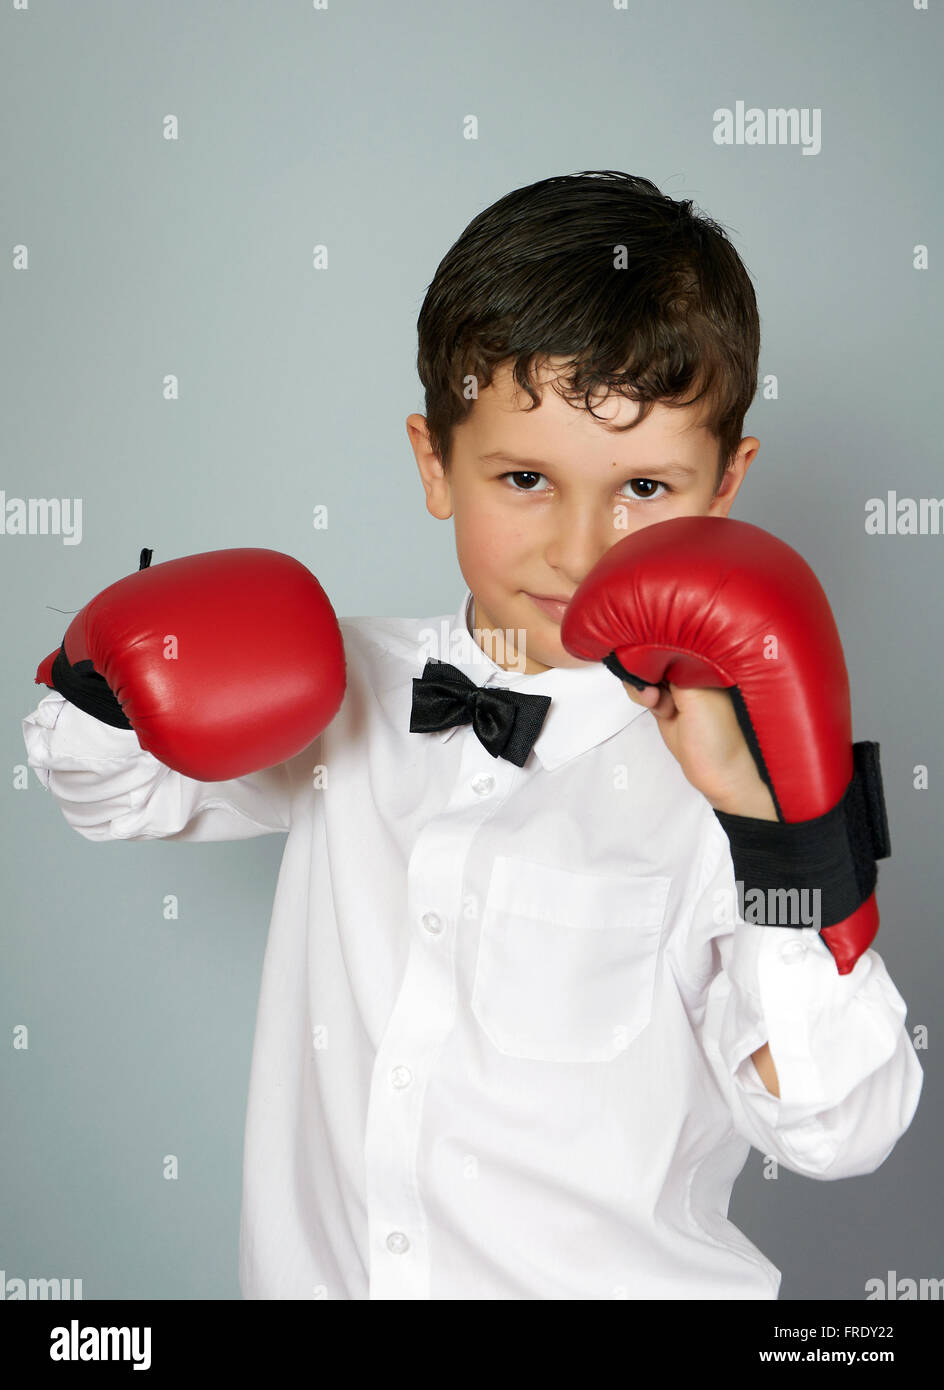 Cinq ans garçon en chemise blanche et nœud papillon avec boxingcarate sur les mains des gants Banque D'Images